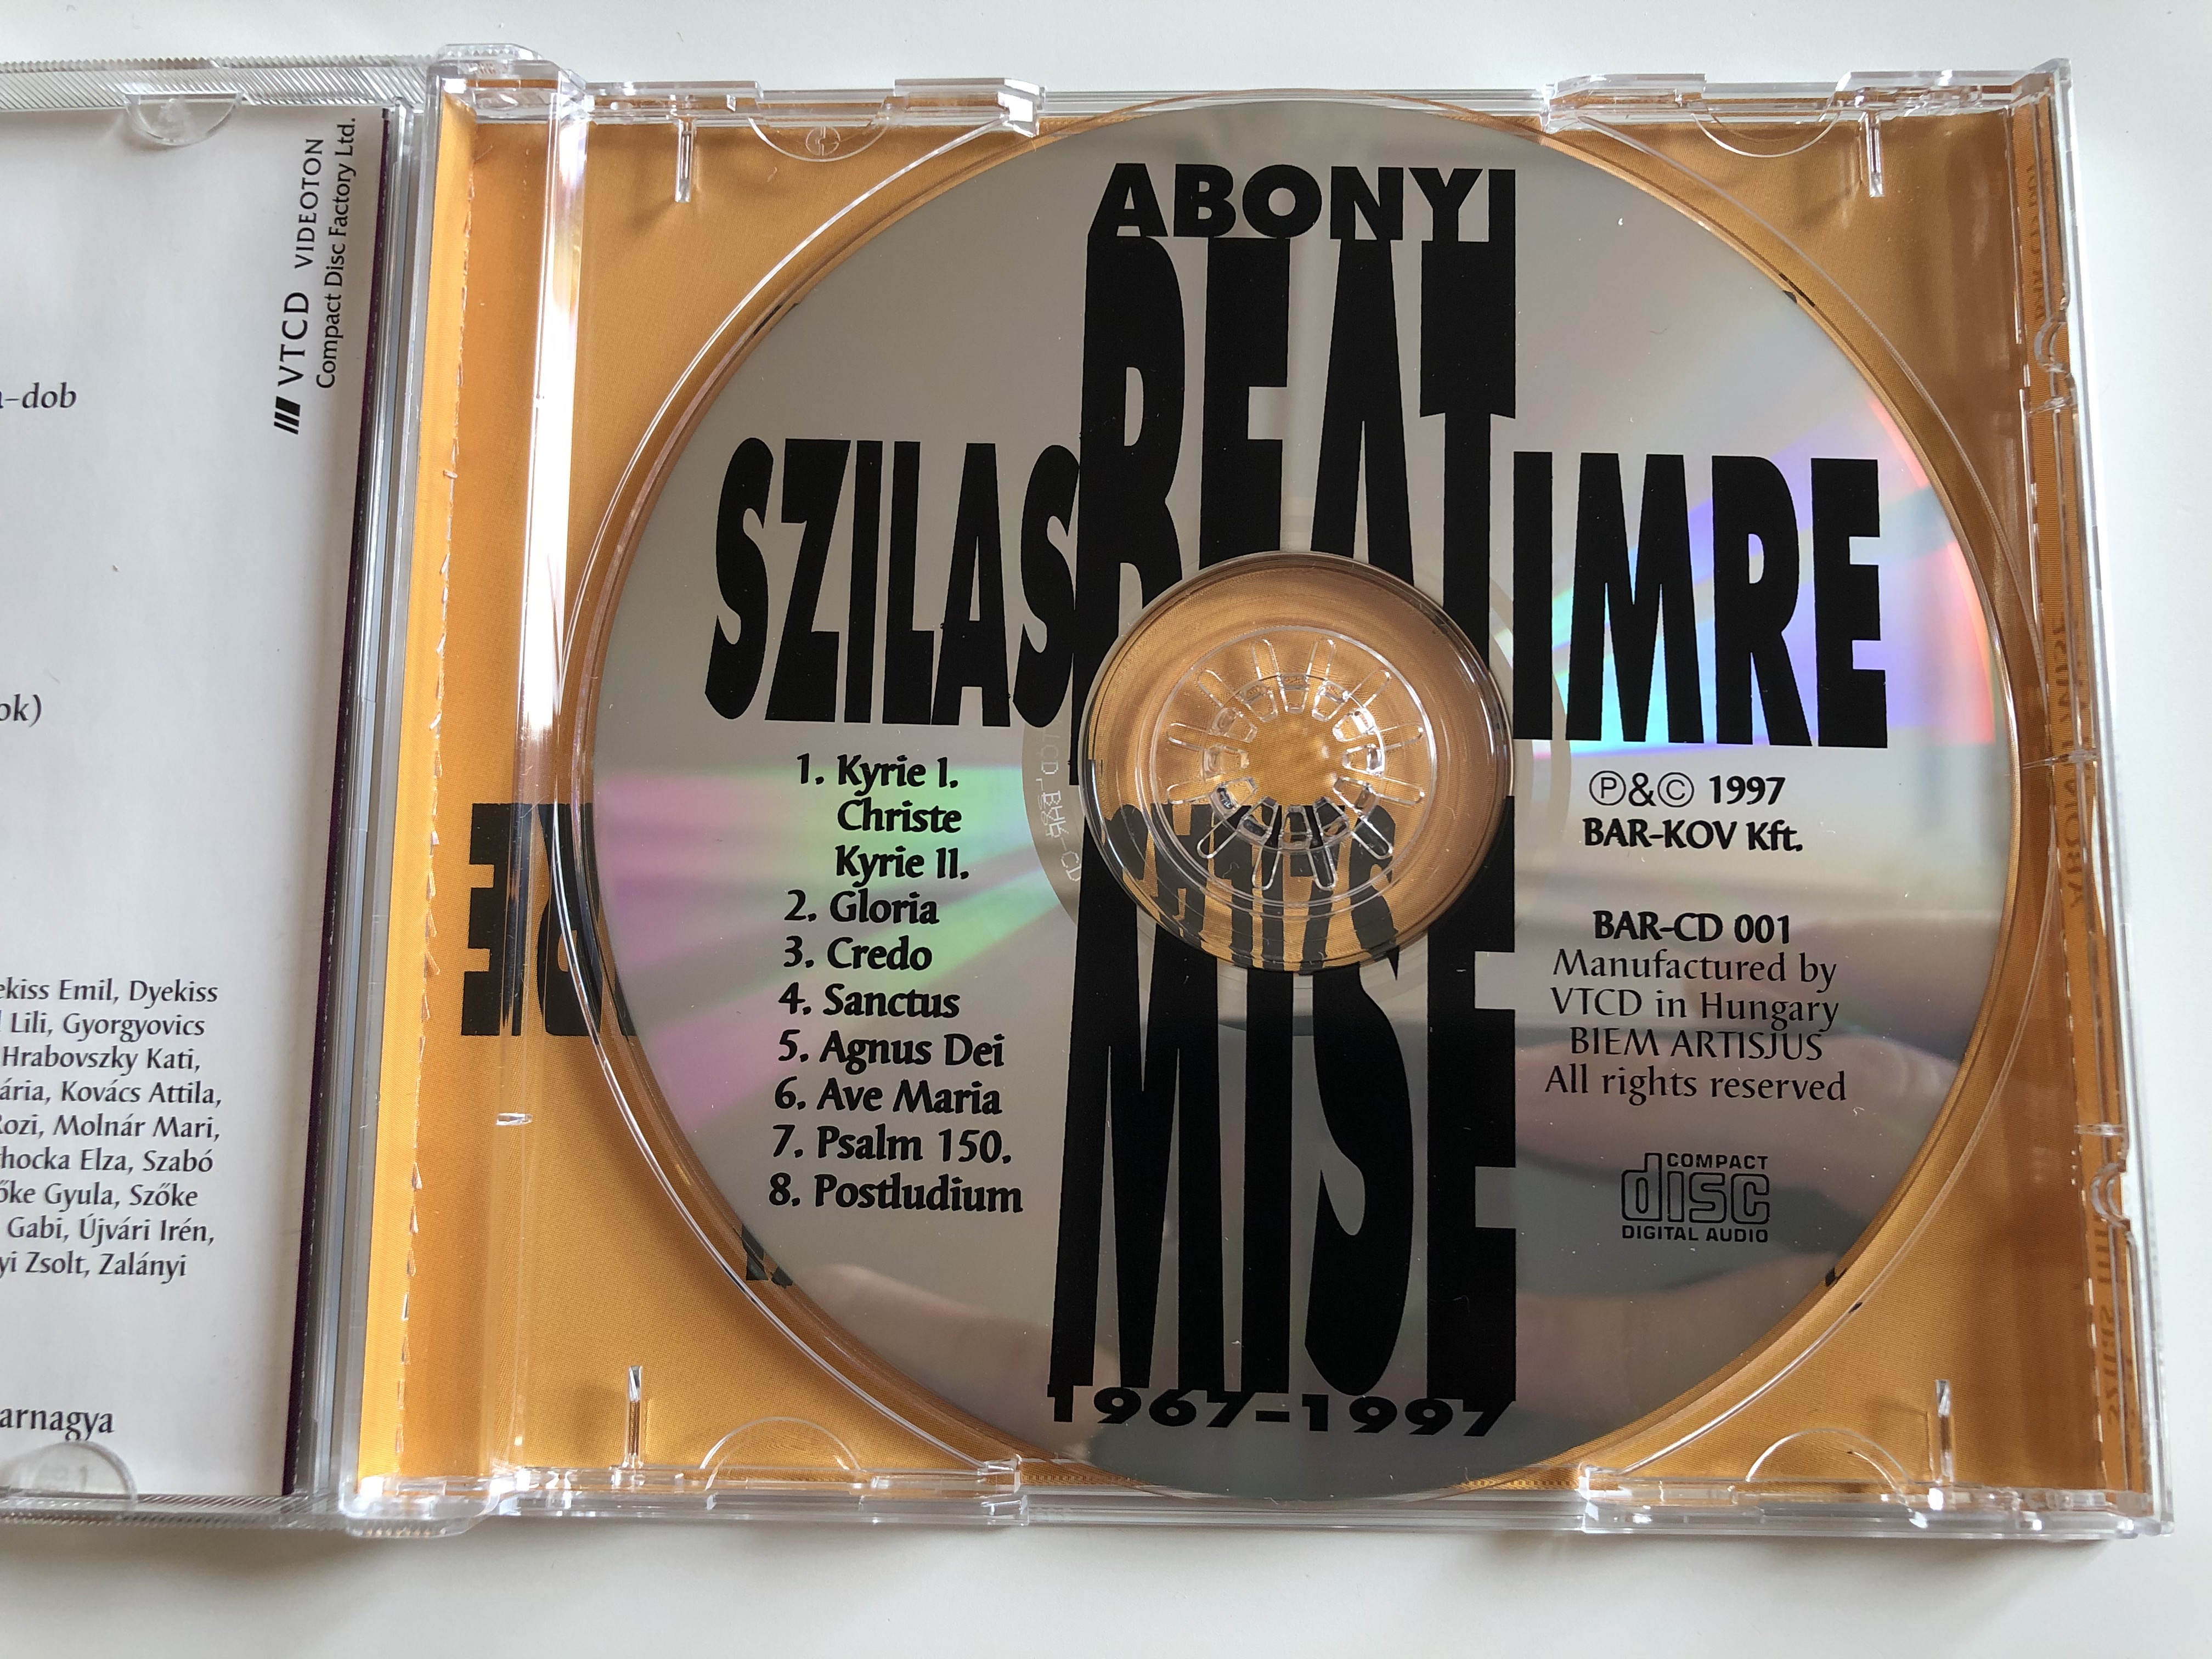 abonyi-beat-mise-szilas-imre-bar-kov-kft.-audio-cd-1997-bar-cd-001-4-.jpg